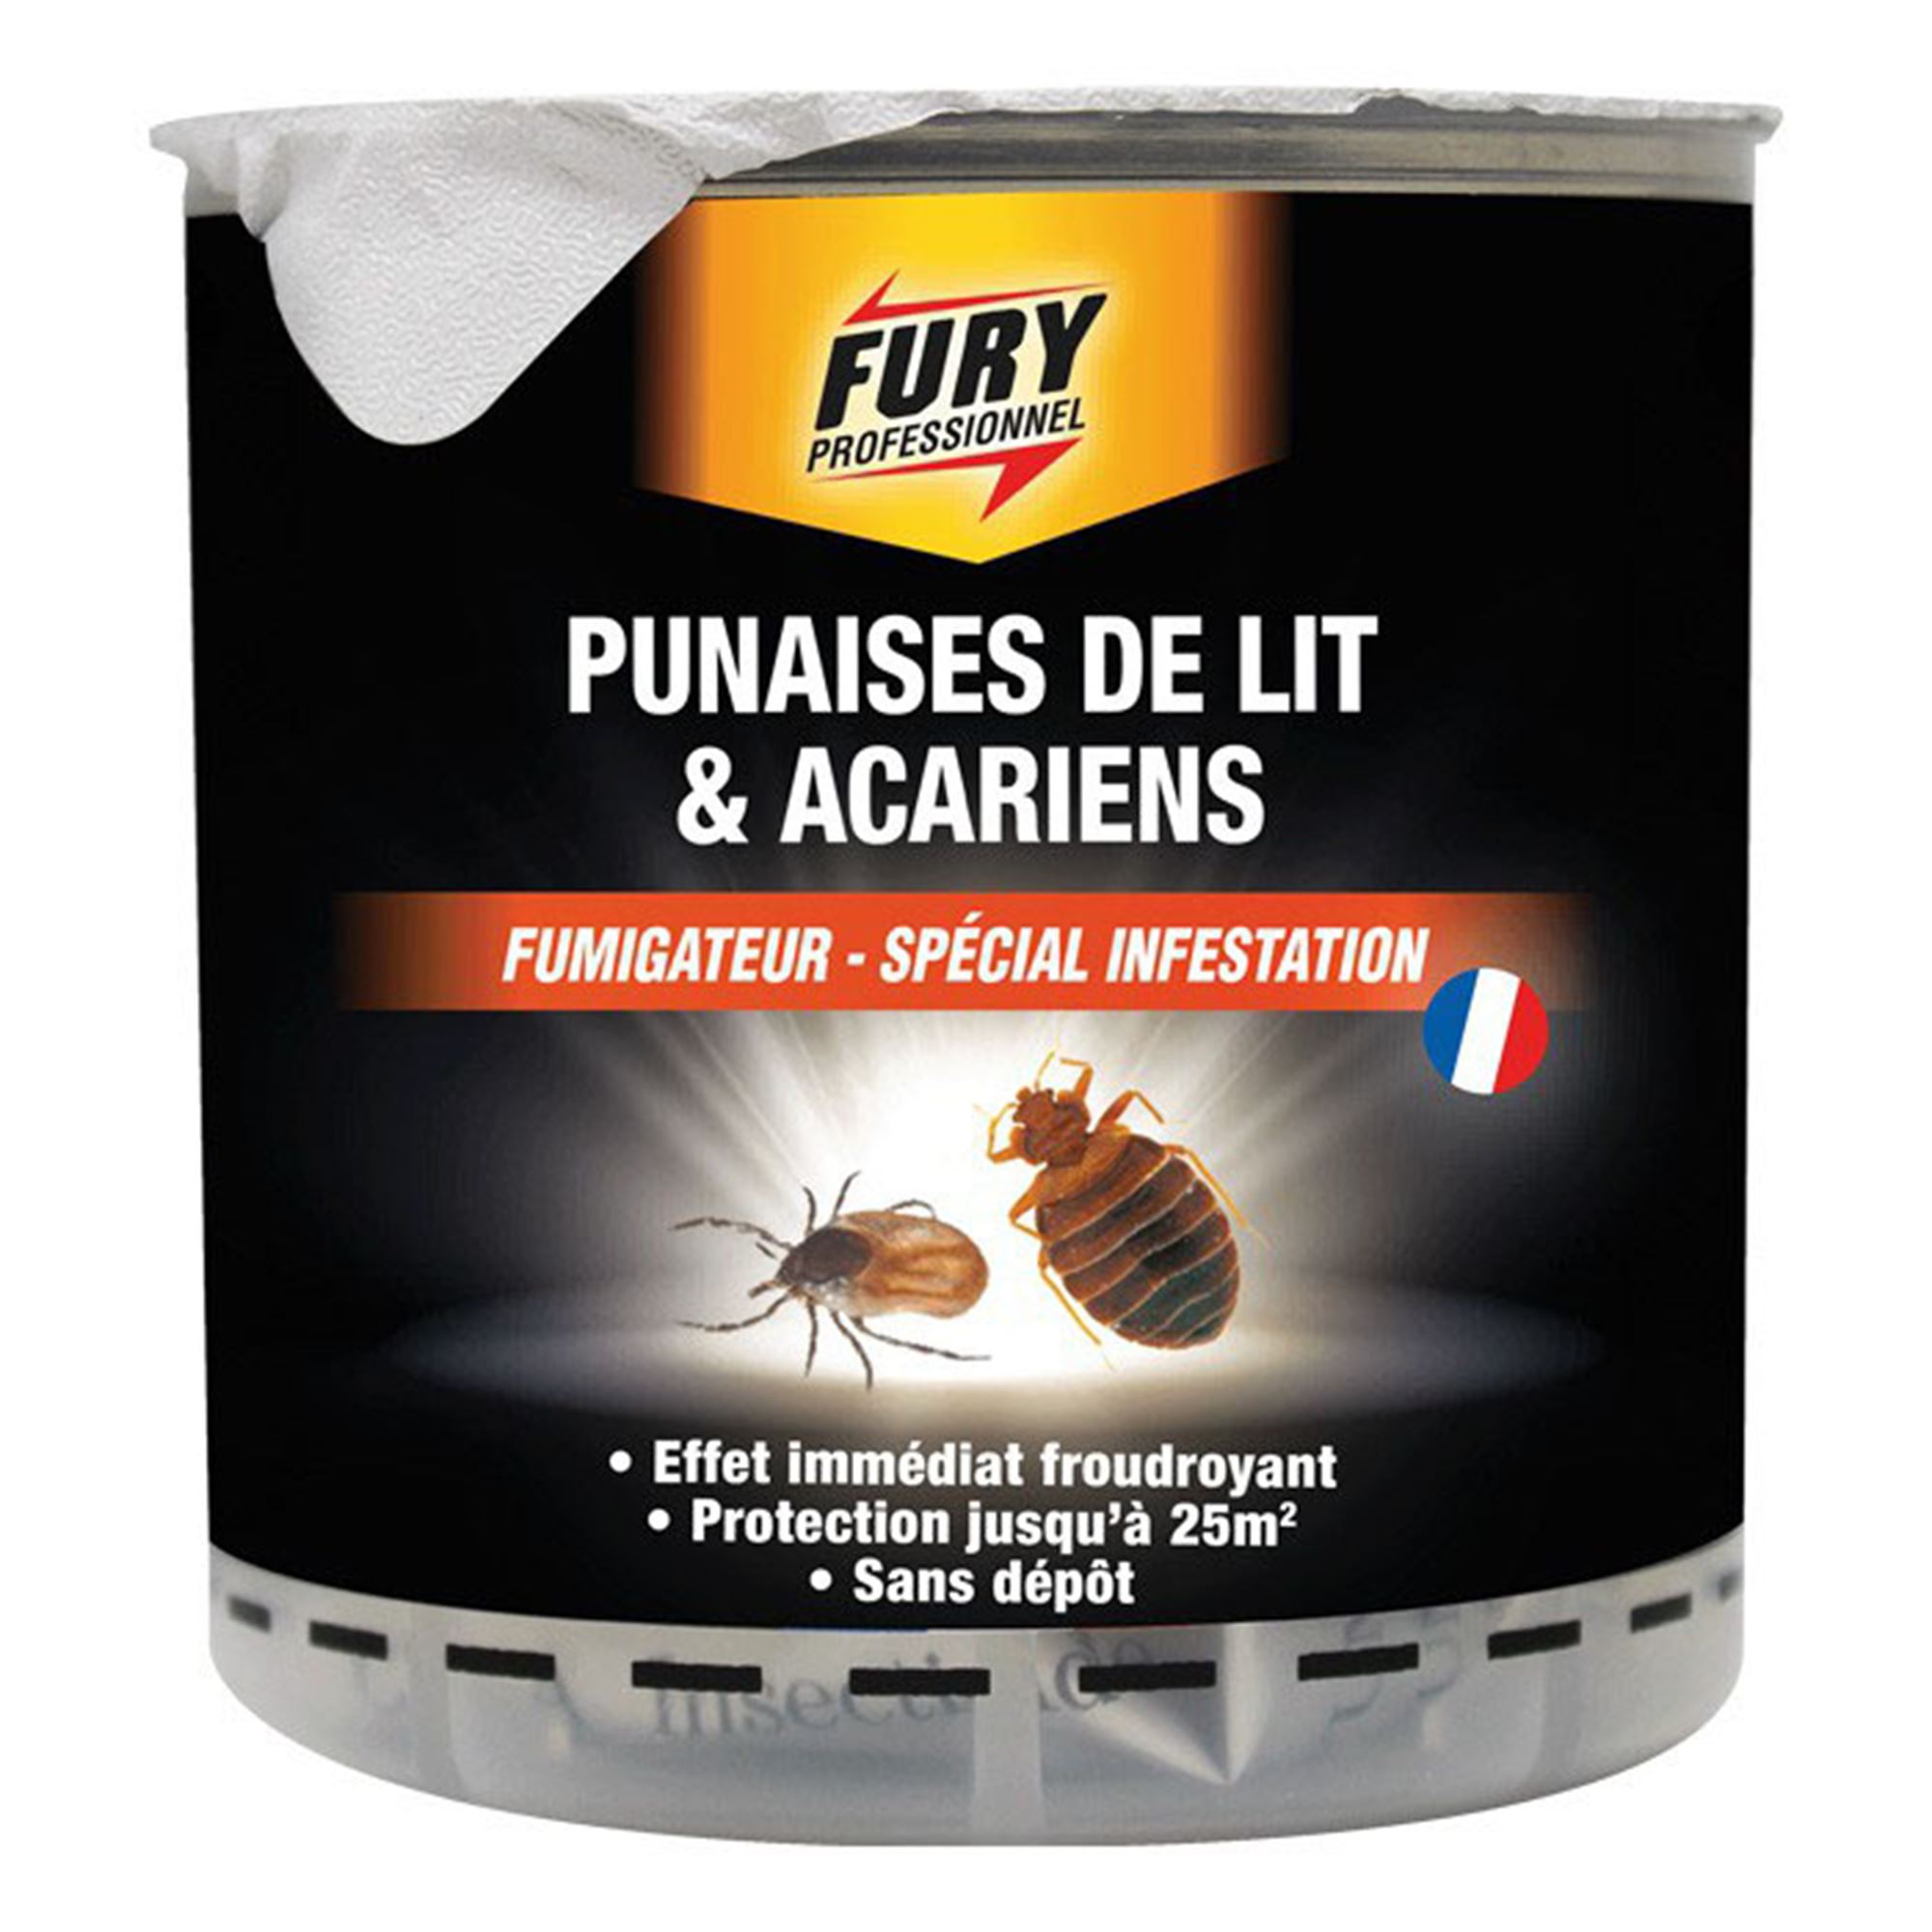 Fumigateur punaises de lit et acariens Fury 25 m² - Insecticides